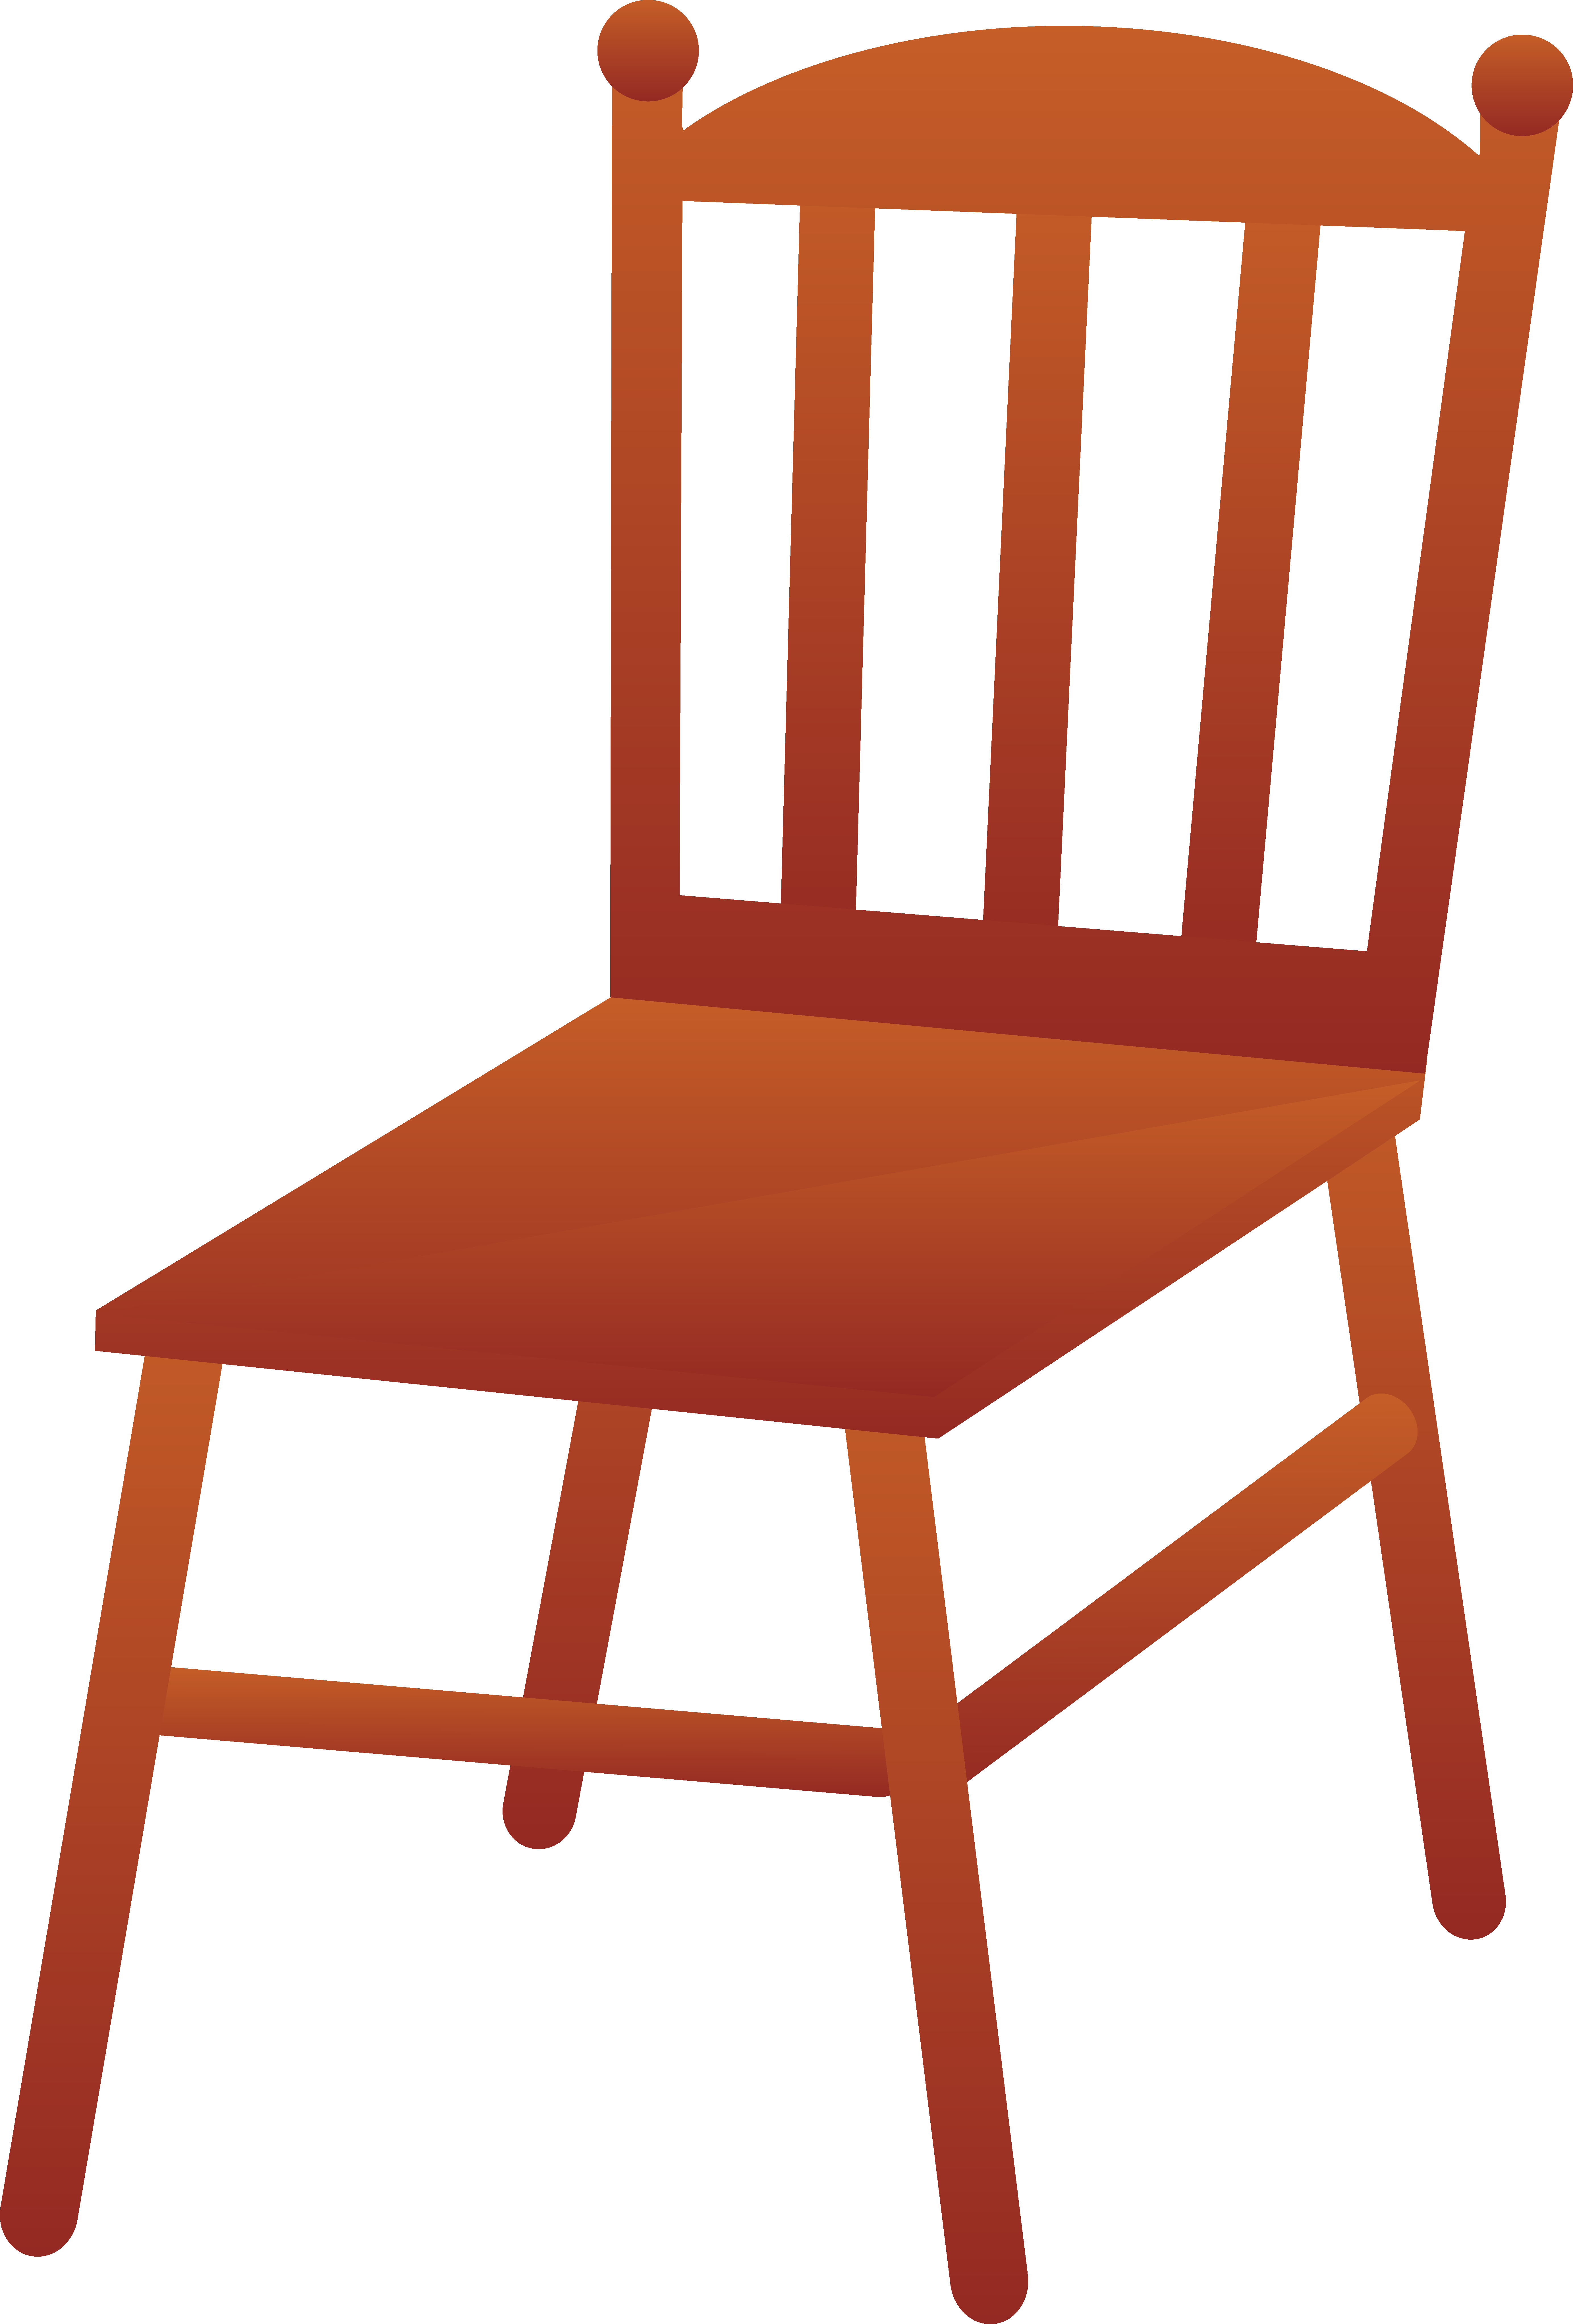 Chair - Chair Clipart (5534x8175)